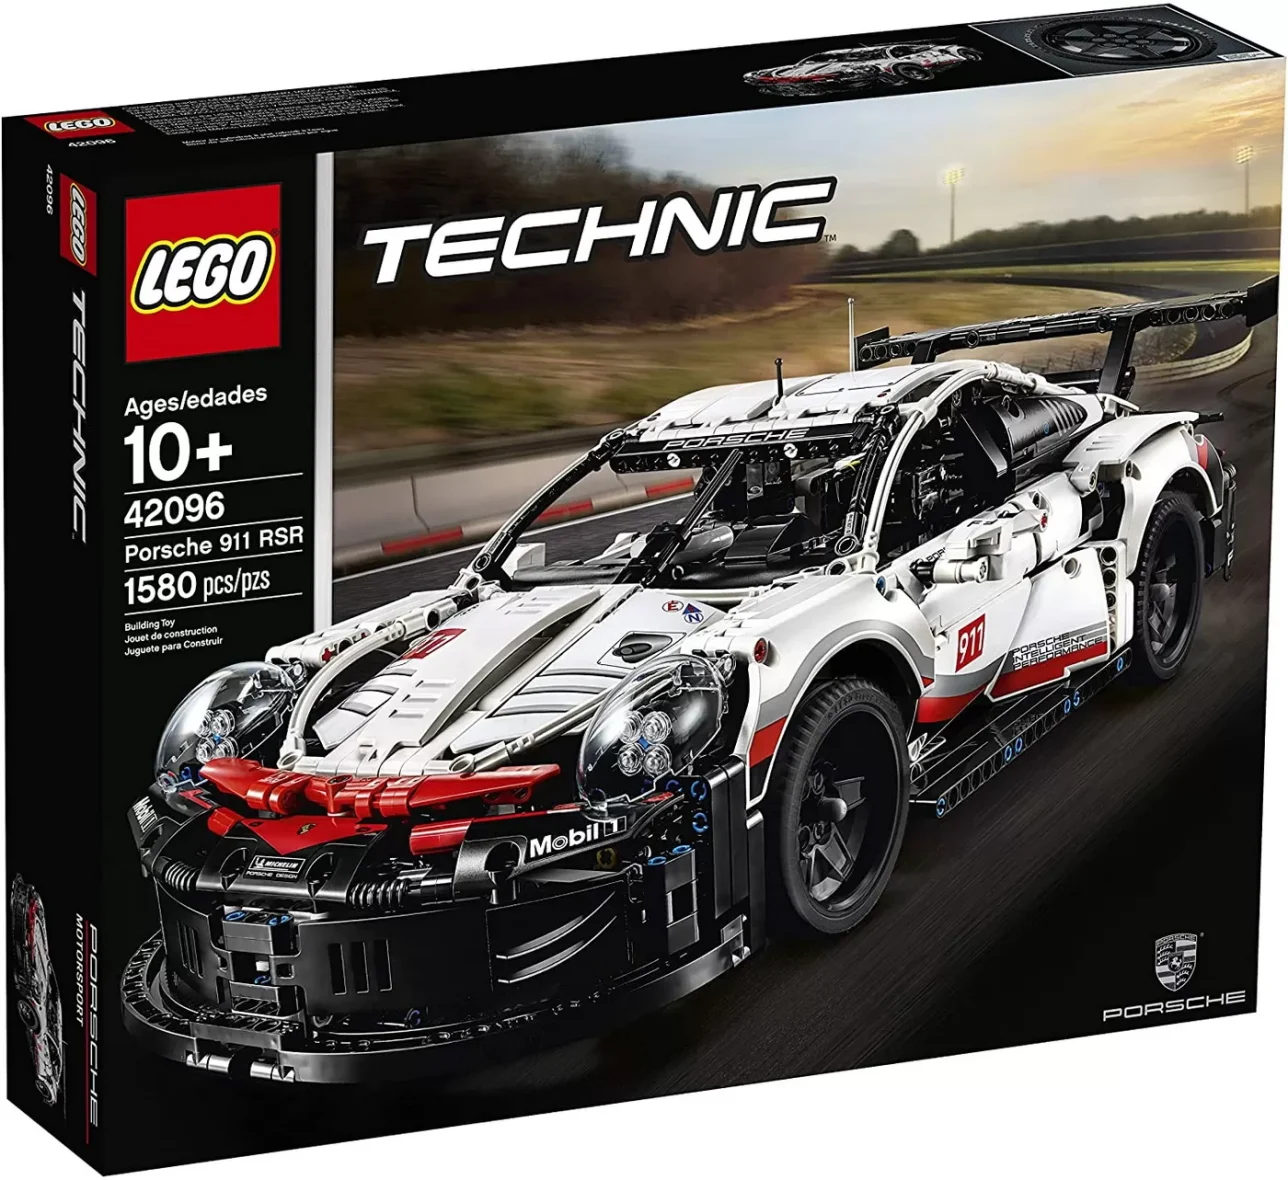 LEGO TECHNIC PORSCHE 911 RSR 42096